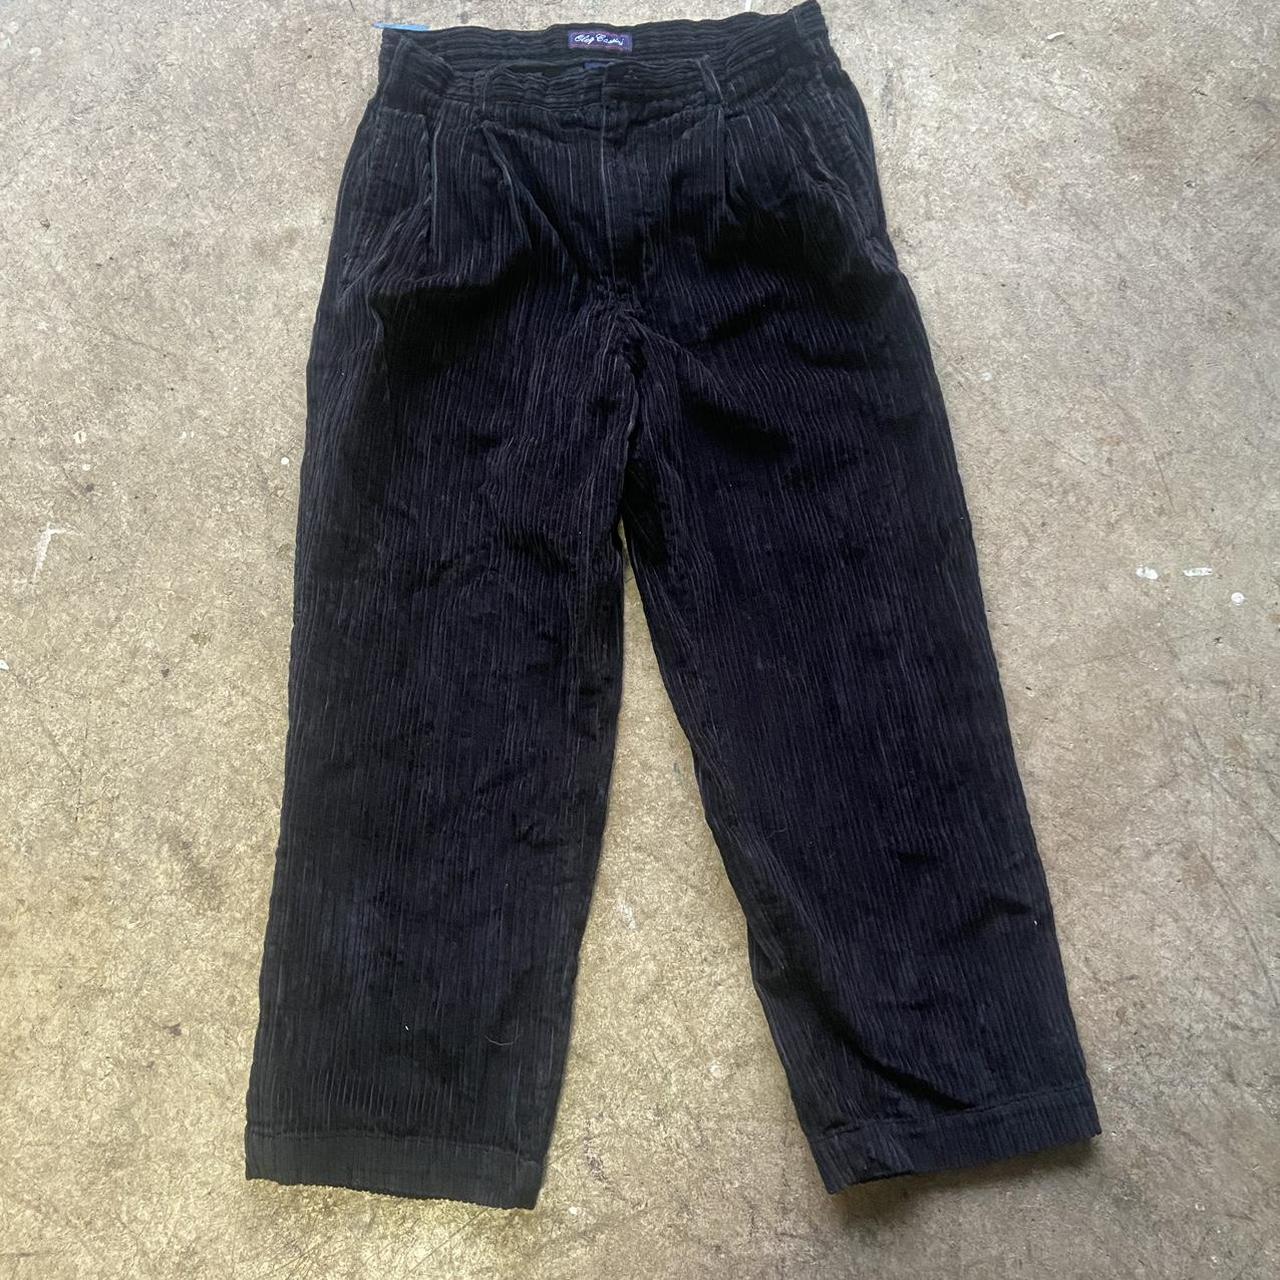 Baggy Fit Black Corduroy Pants Size 36x30 Missing... - Depop